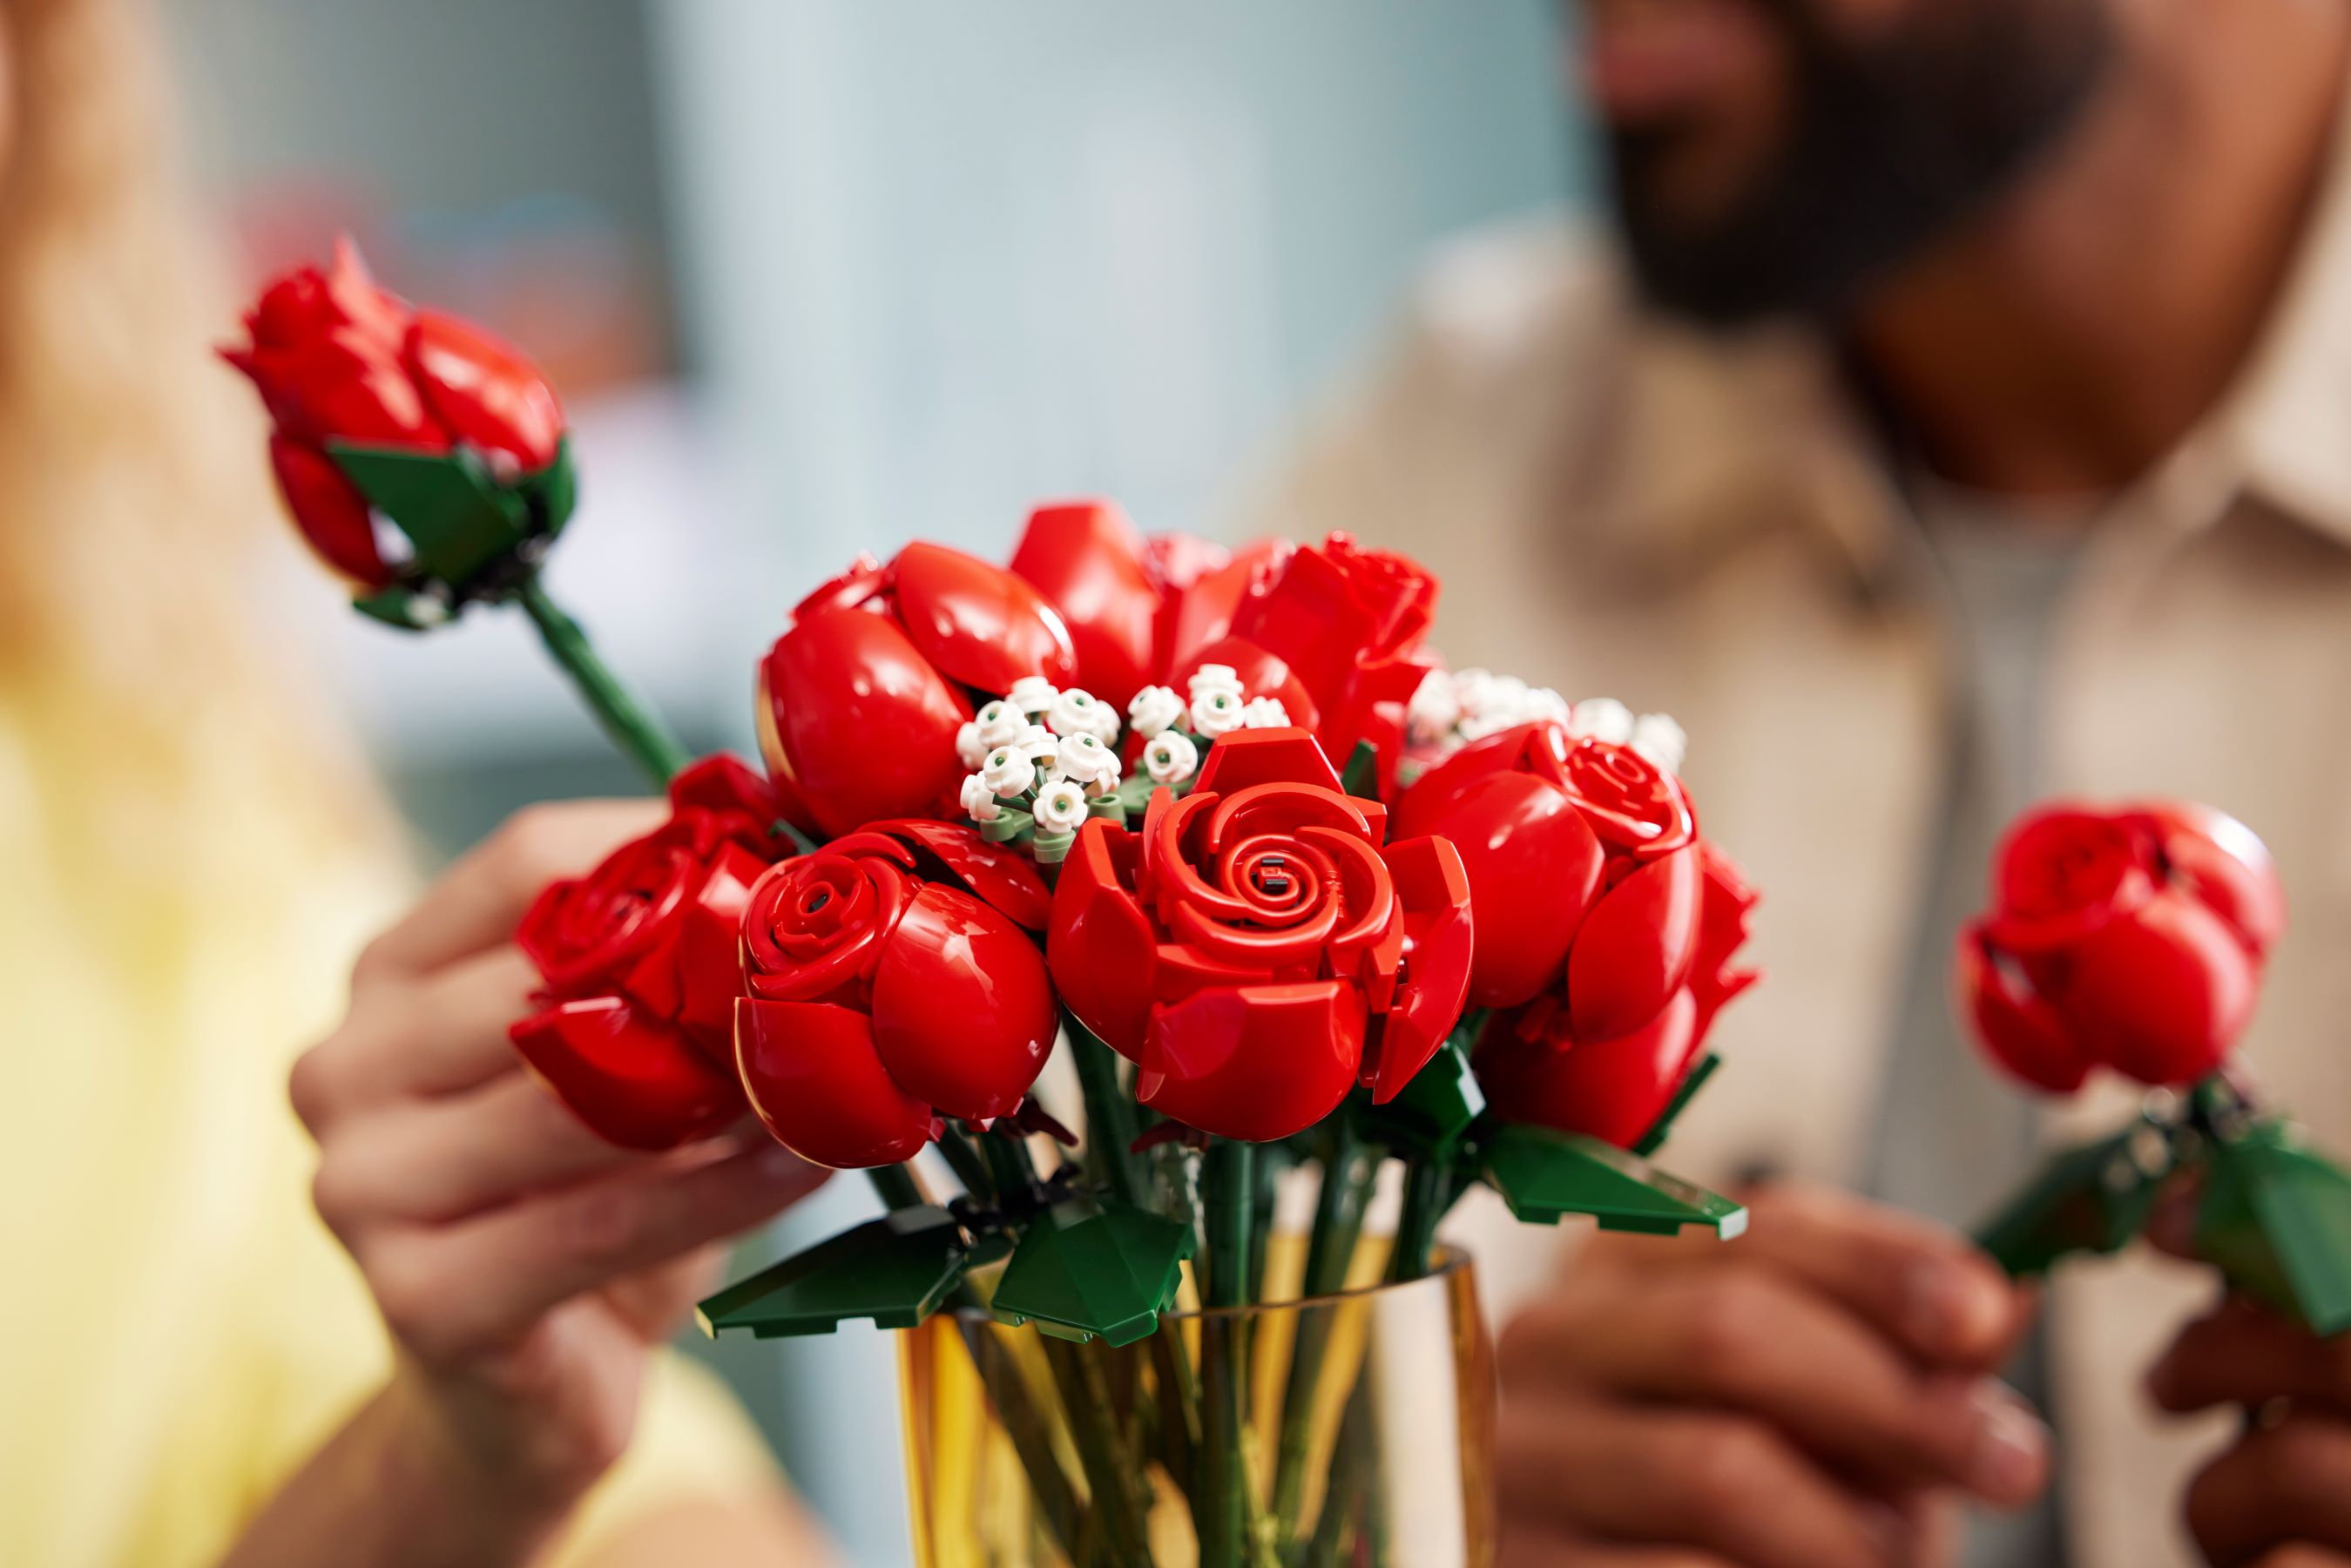 LEGO agrega un ramo de rosas a su colección Botanical - Nacion